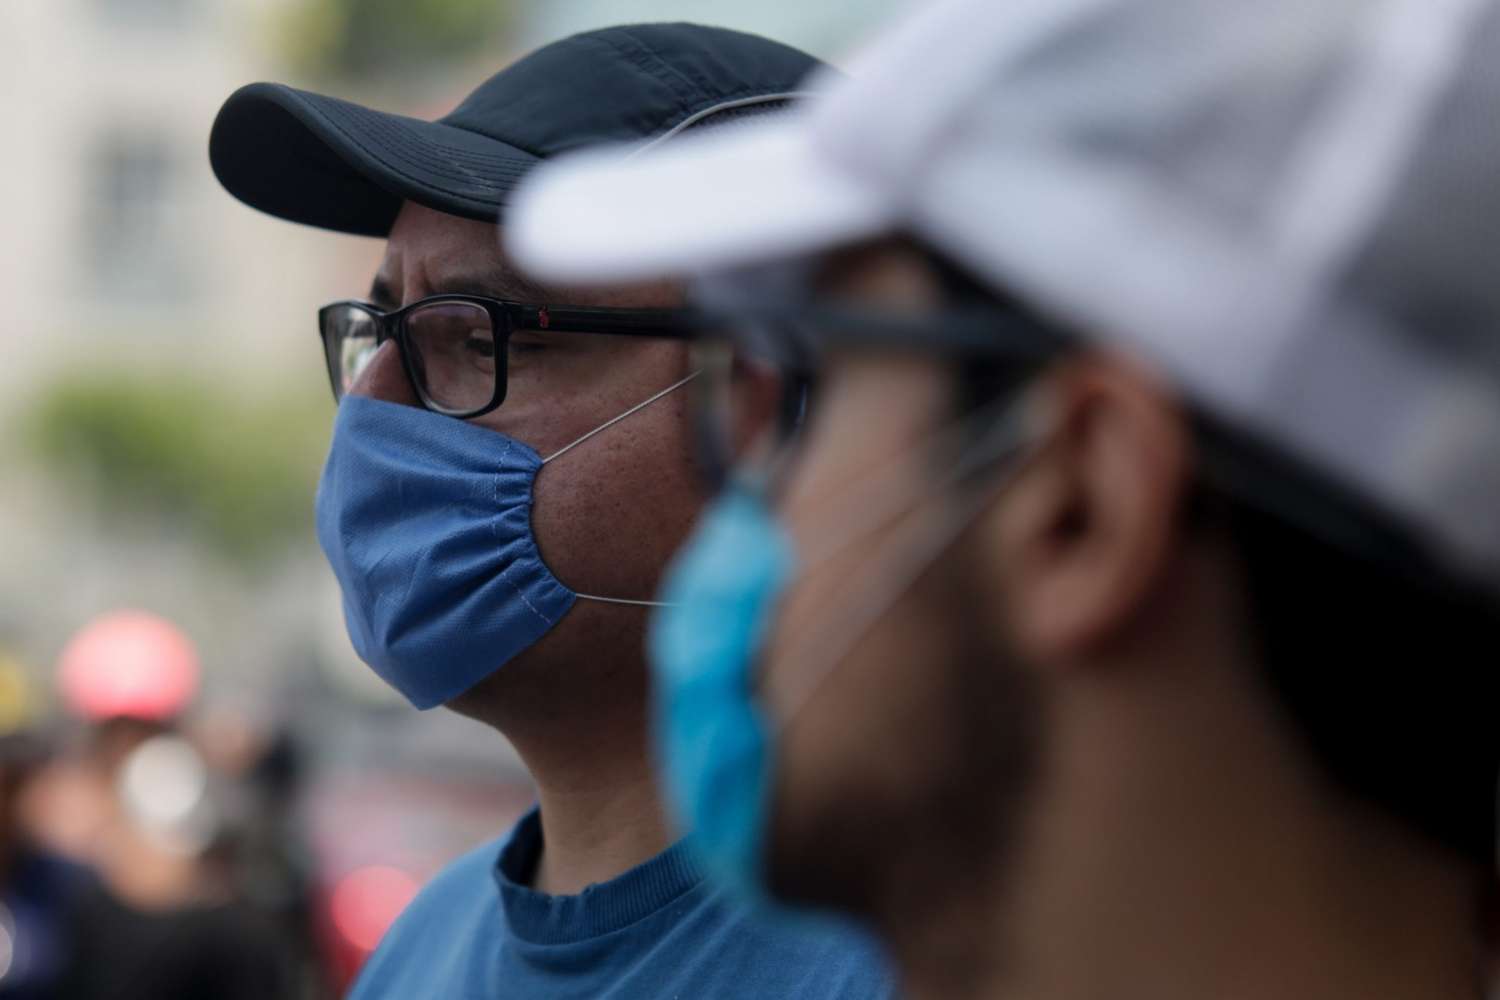 Decesos: Salud confirmó cuatro fallecimientos en la provincia asociados a la pandemia